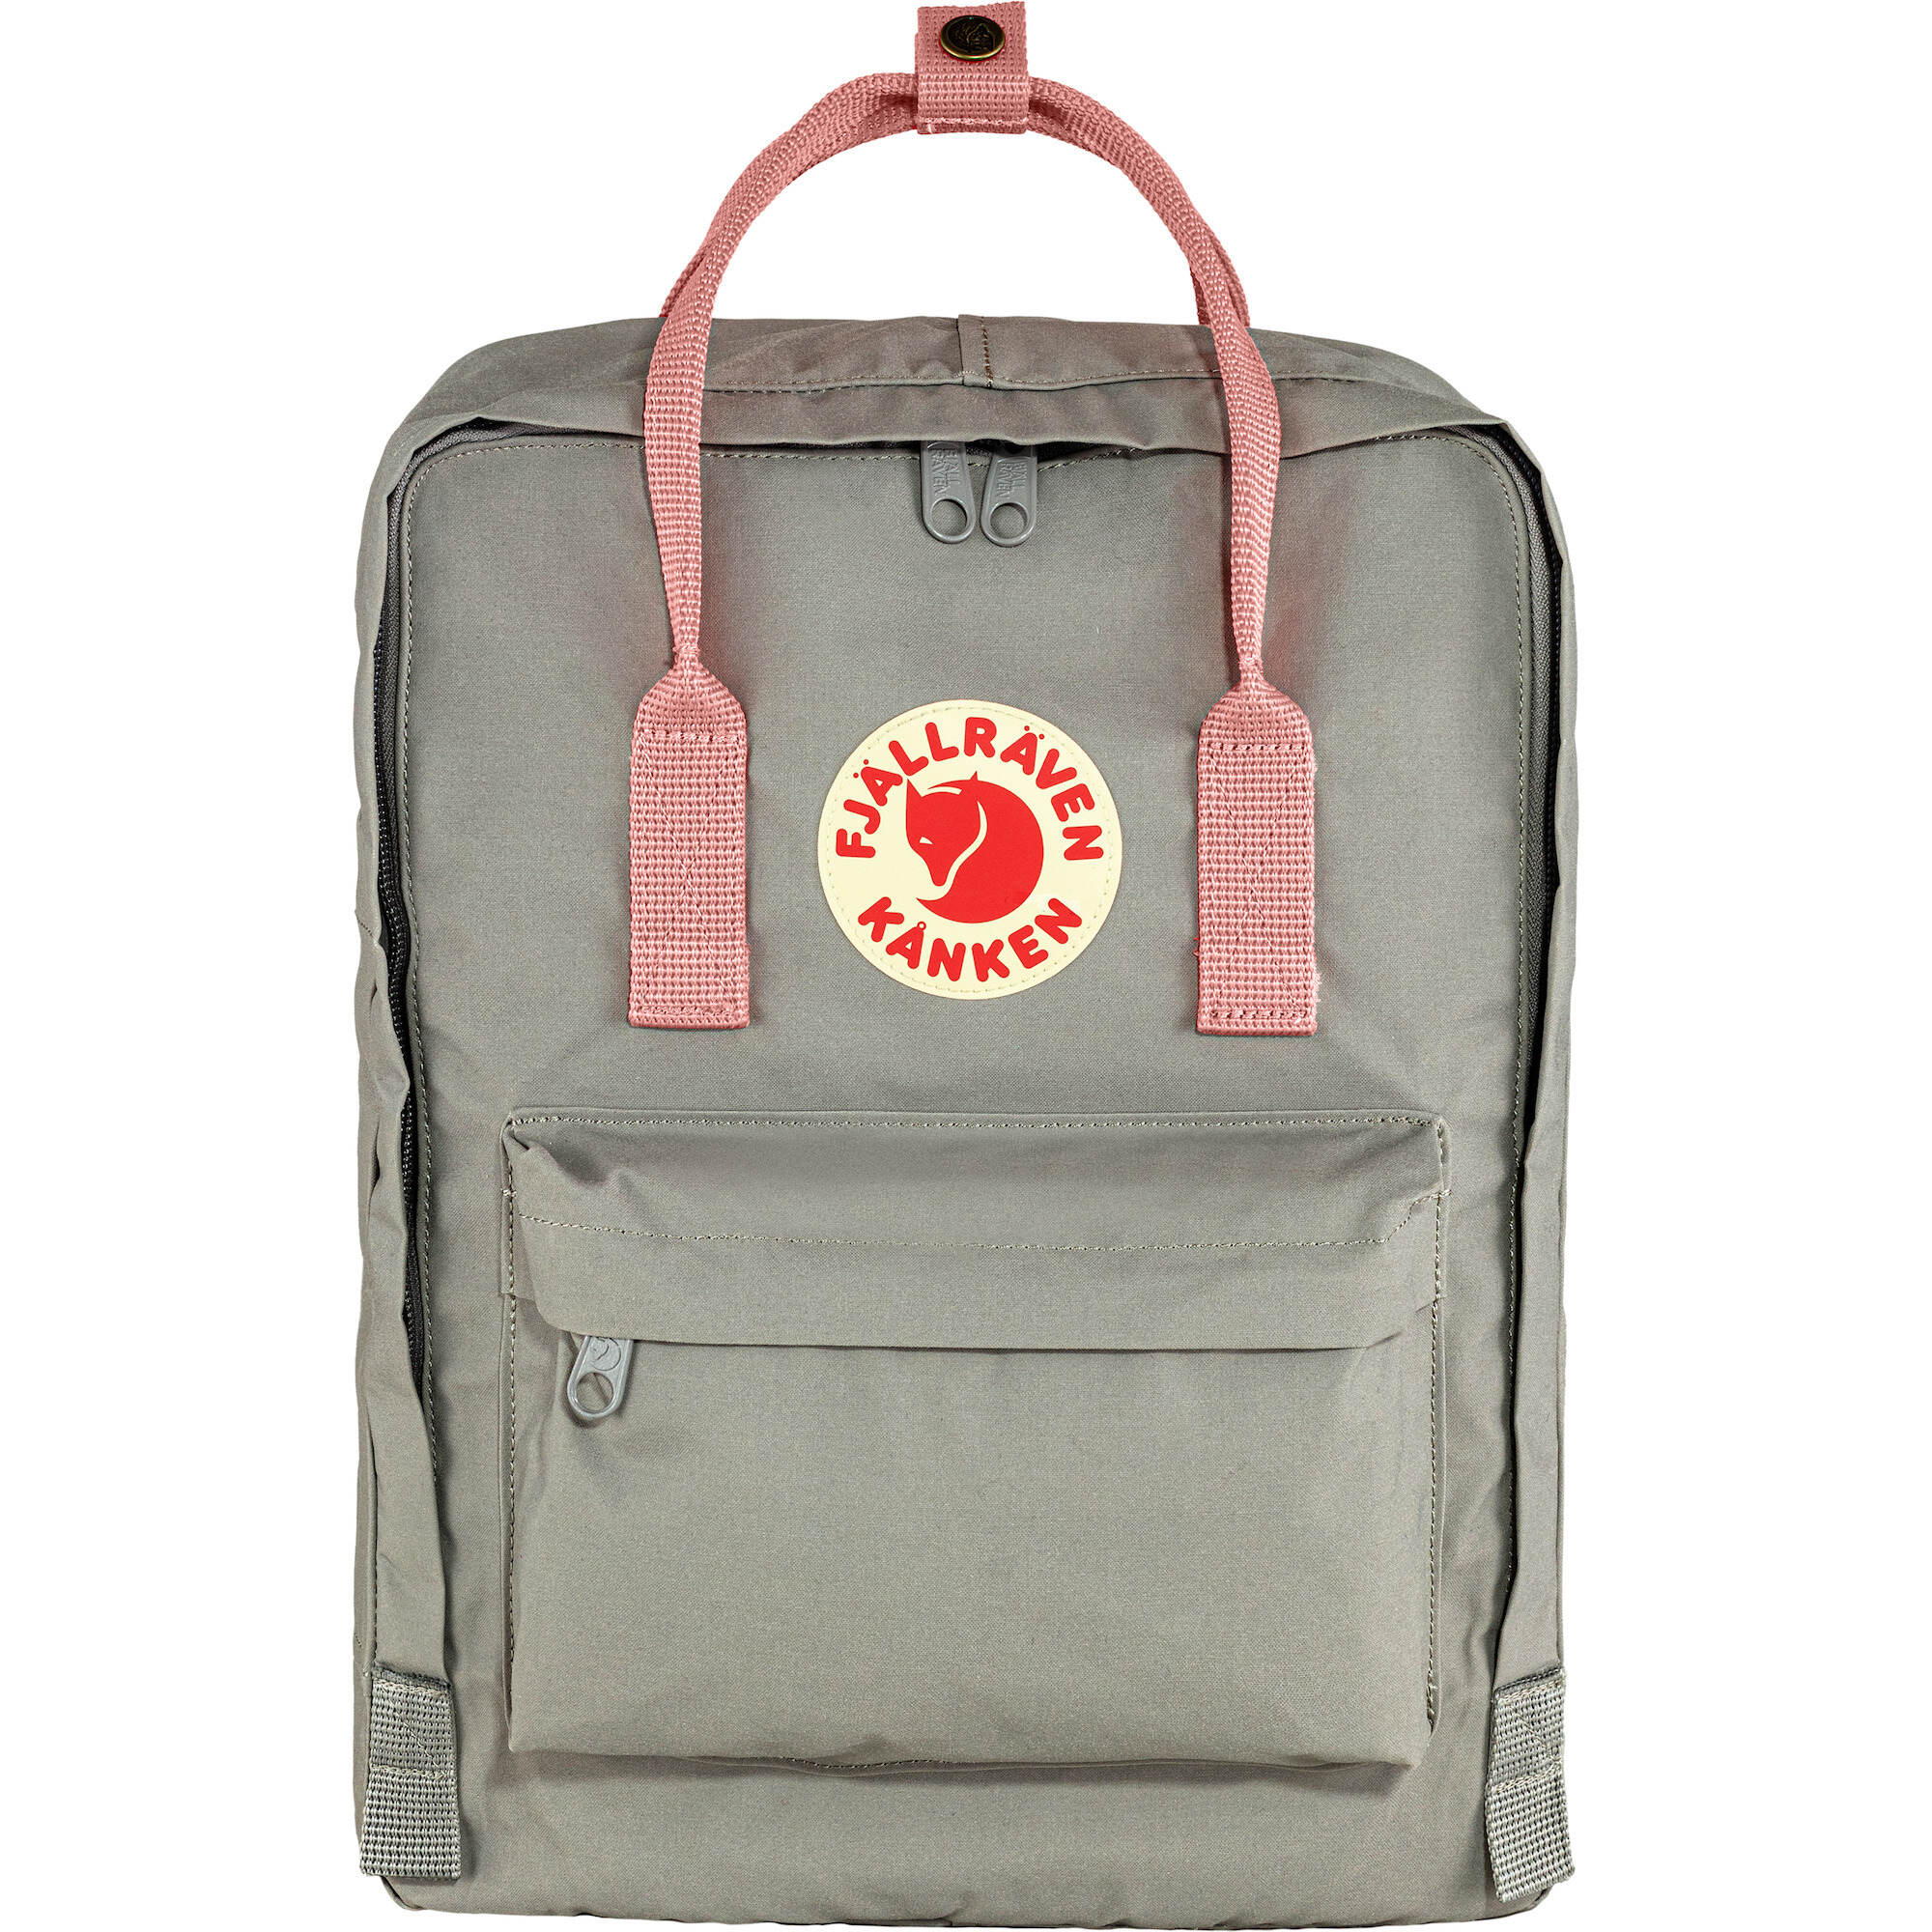 Shop the Official Kanken Backpack Collection | Fjallraven US هانيس